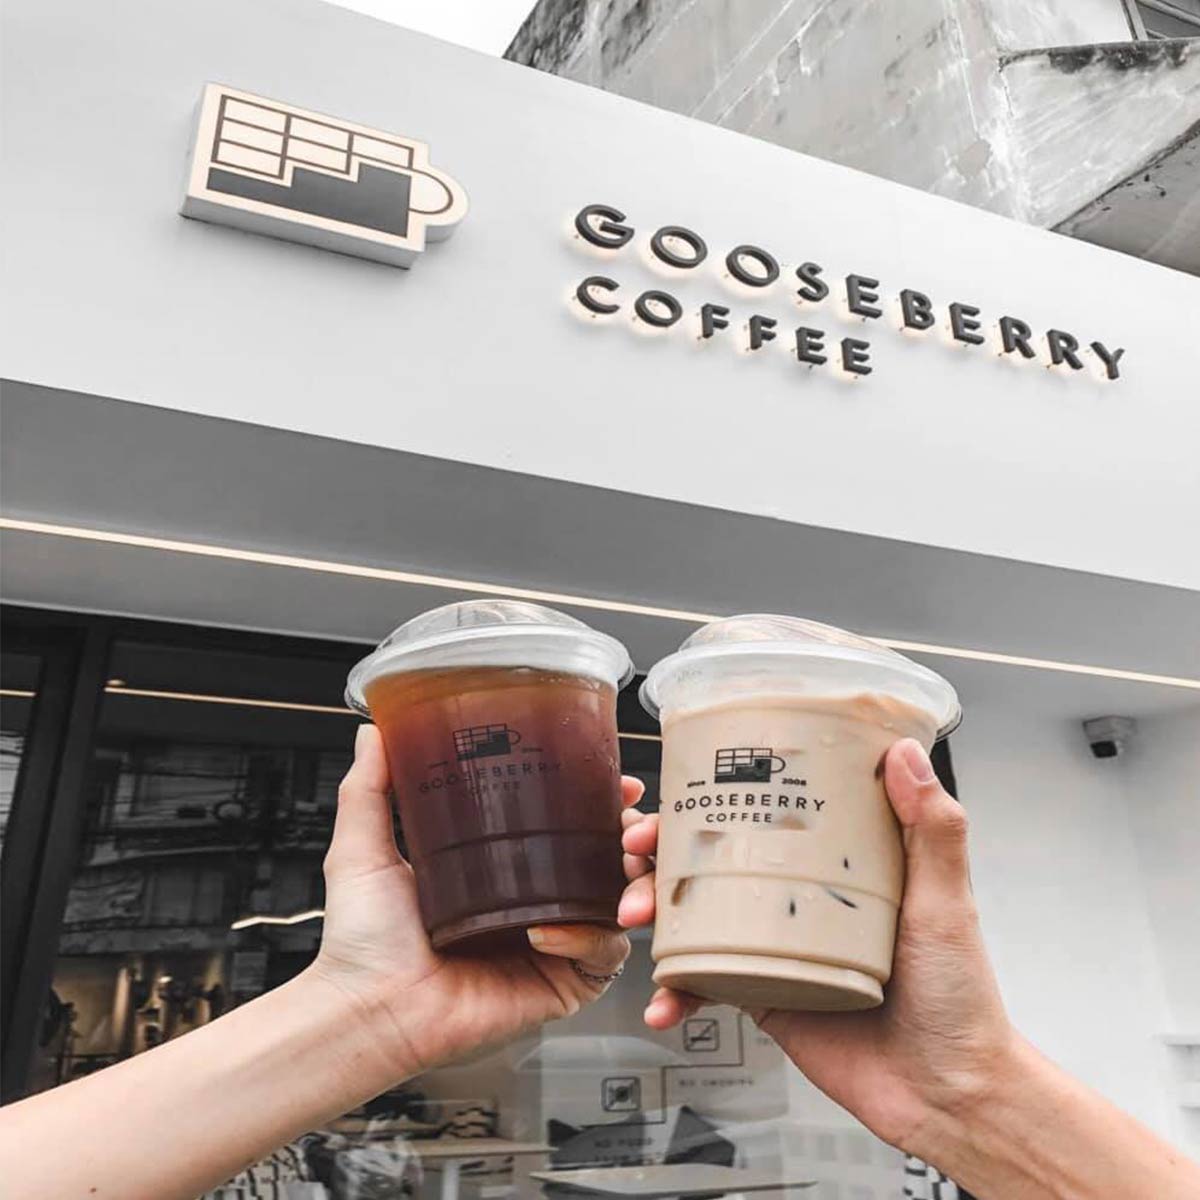 Gooseberry coffee-10 คาเฟ่สมุทรปราการน่านั่งชิลในวันหยุดพักผ่อน อัพเดทใหม่ 2021